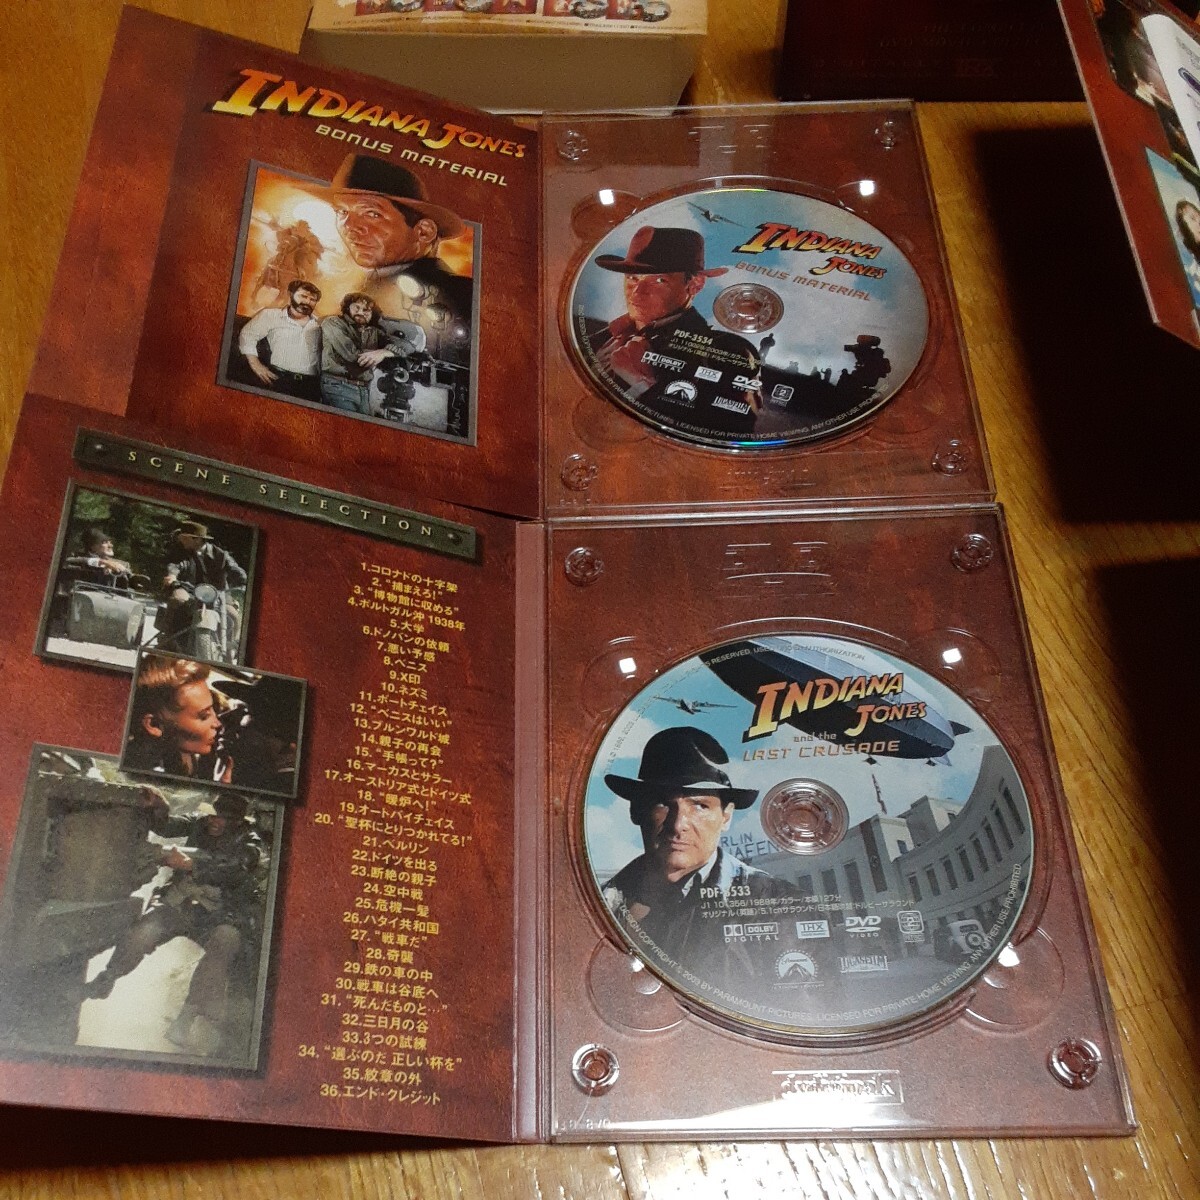  adventure zob Indy Jones Complete DVD collection ( repeated departure low price version ) ( relation ) Indy Jones s tea 